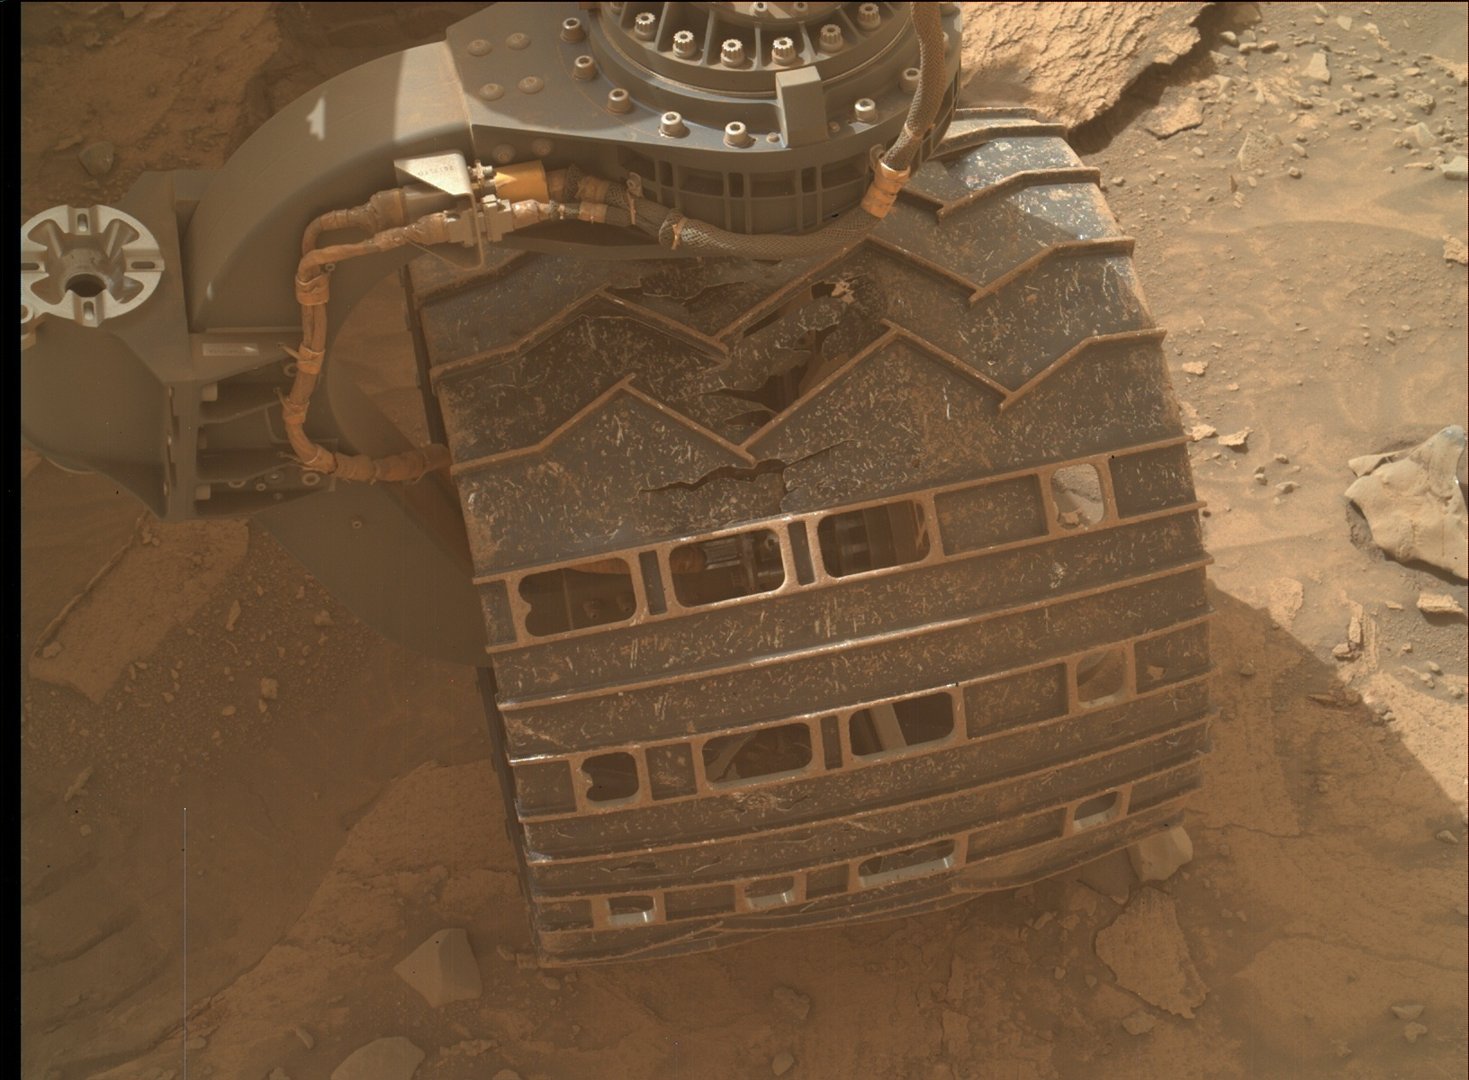 Una rueda del rover Mars Curiosity que muestra daños por terreno accidentado